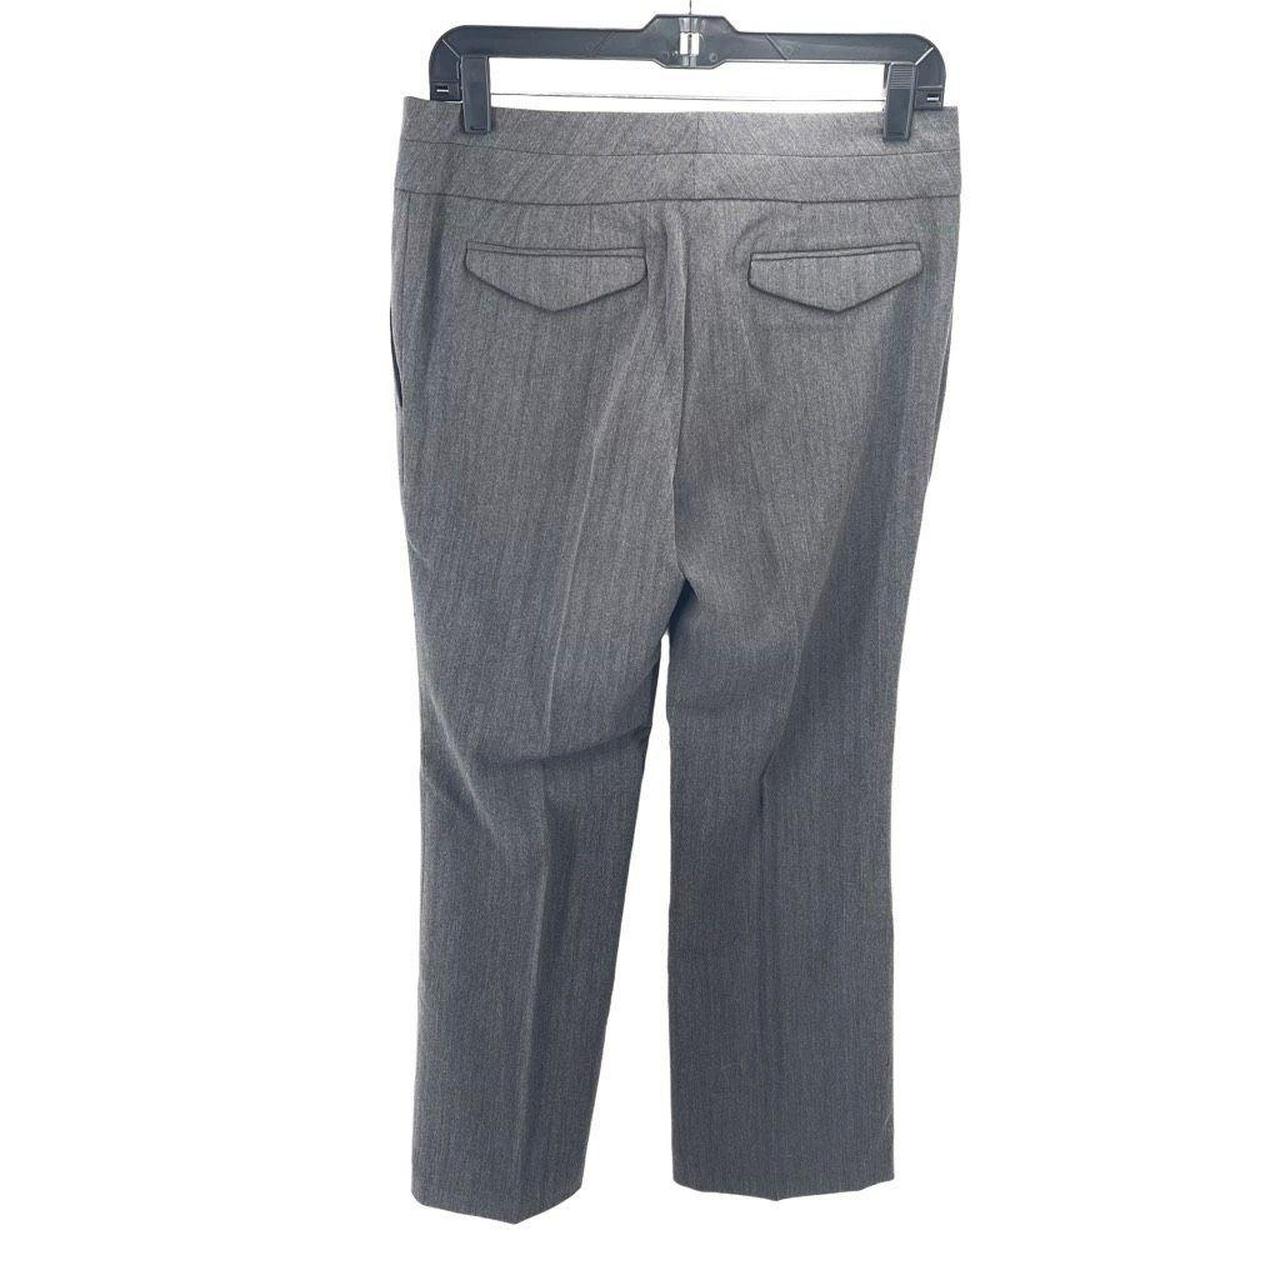 Chelsea Peers Women's Grey Trousers (3)